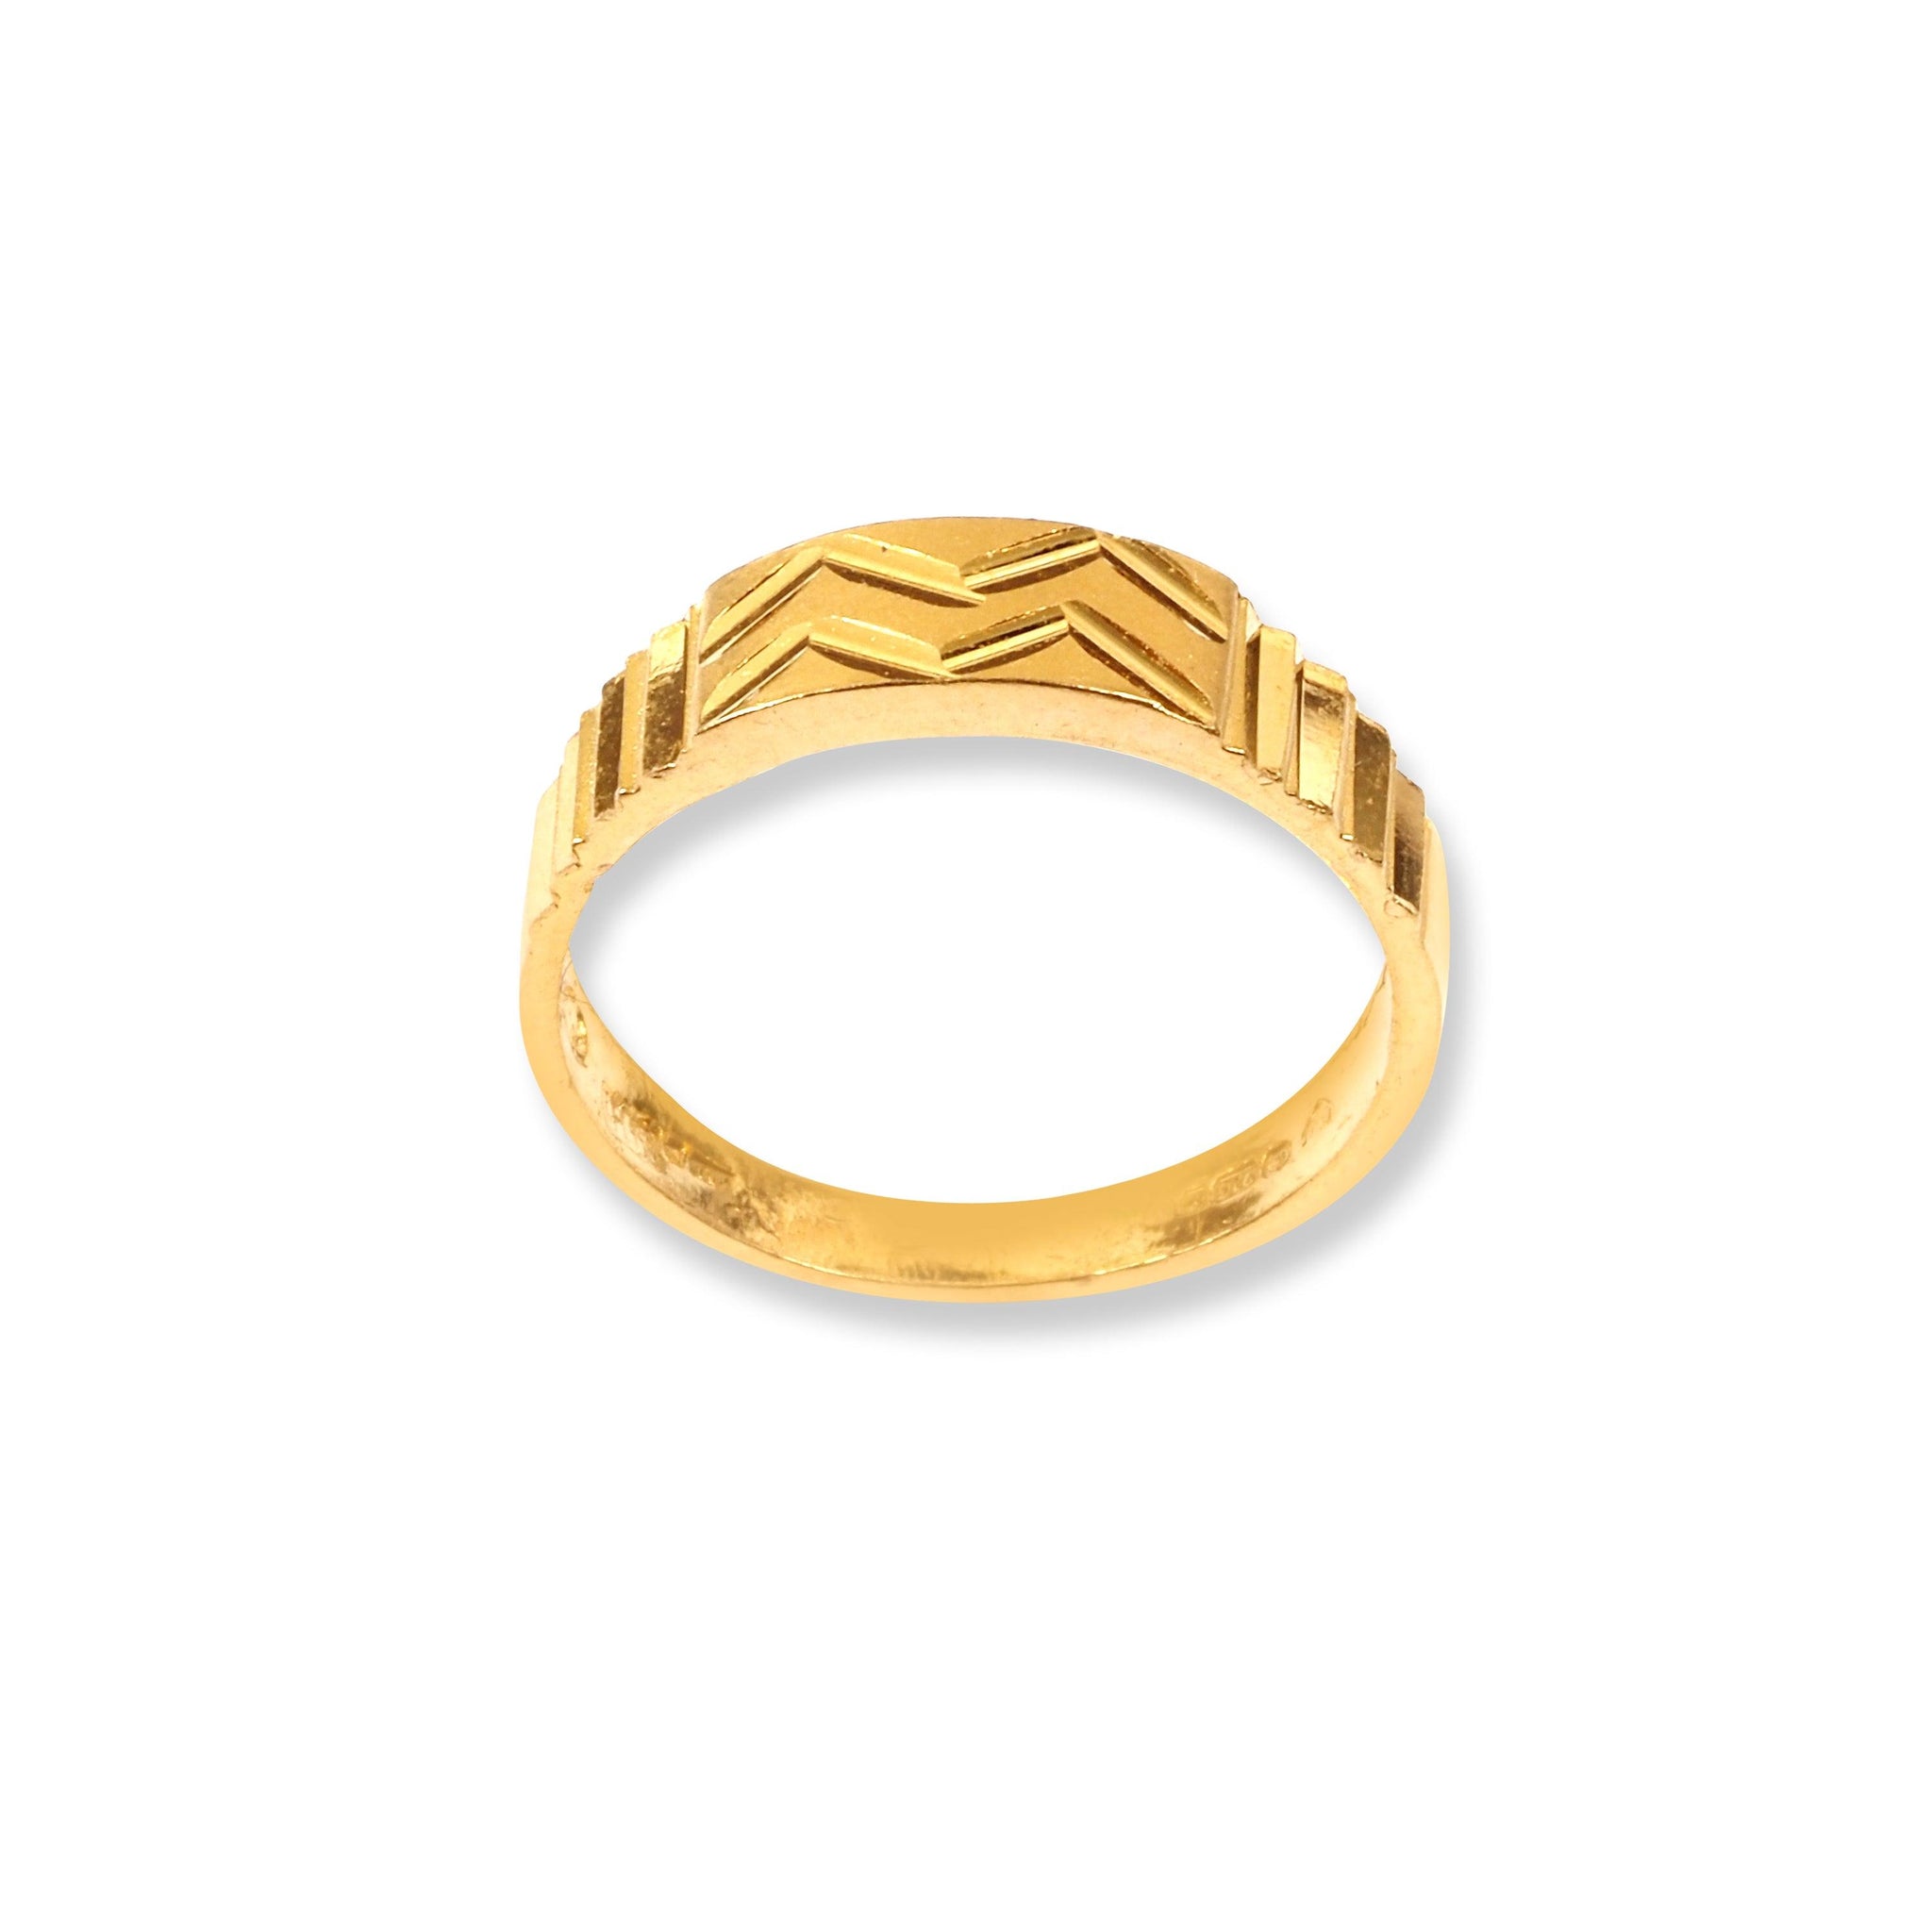 22ct Gold Children's Ring GR-8321